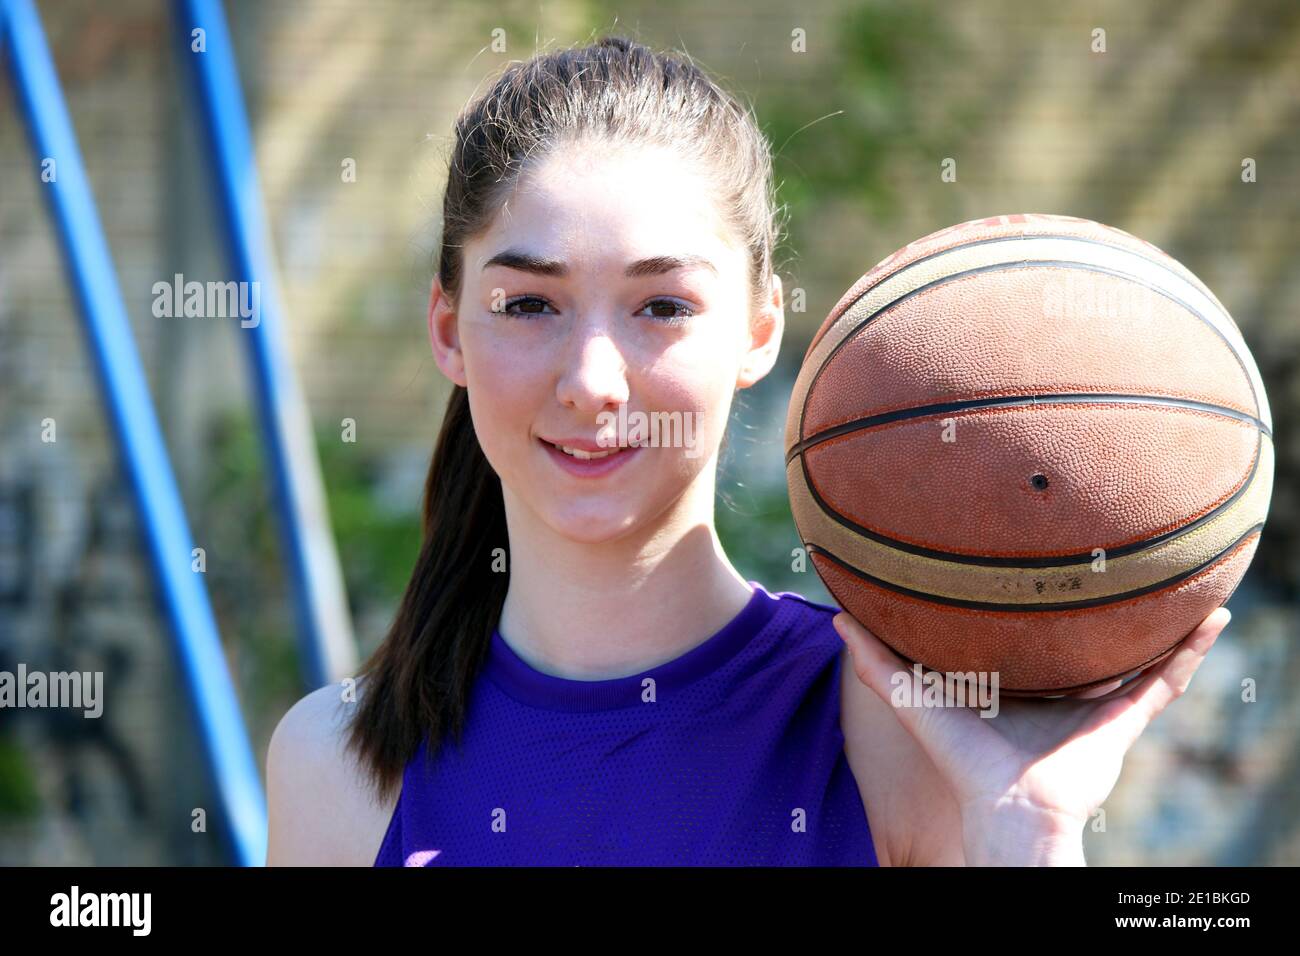 girl player basket ball Stock Photo